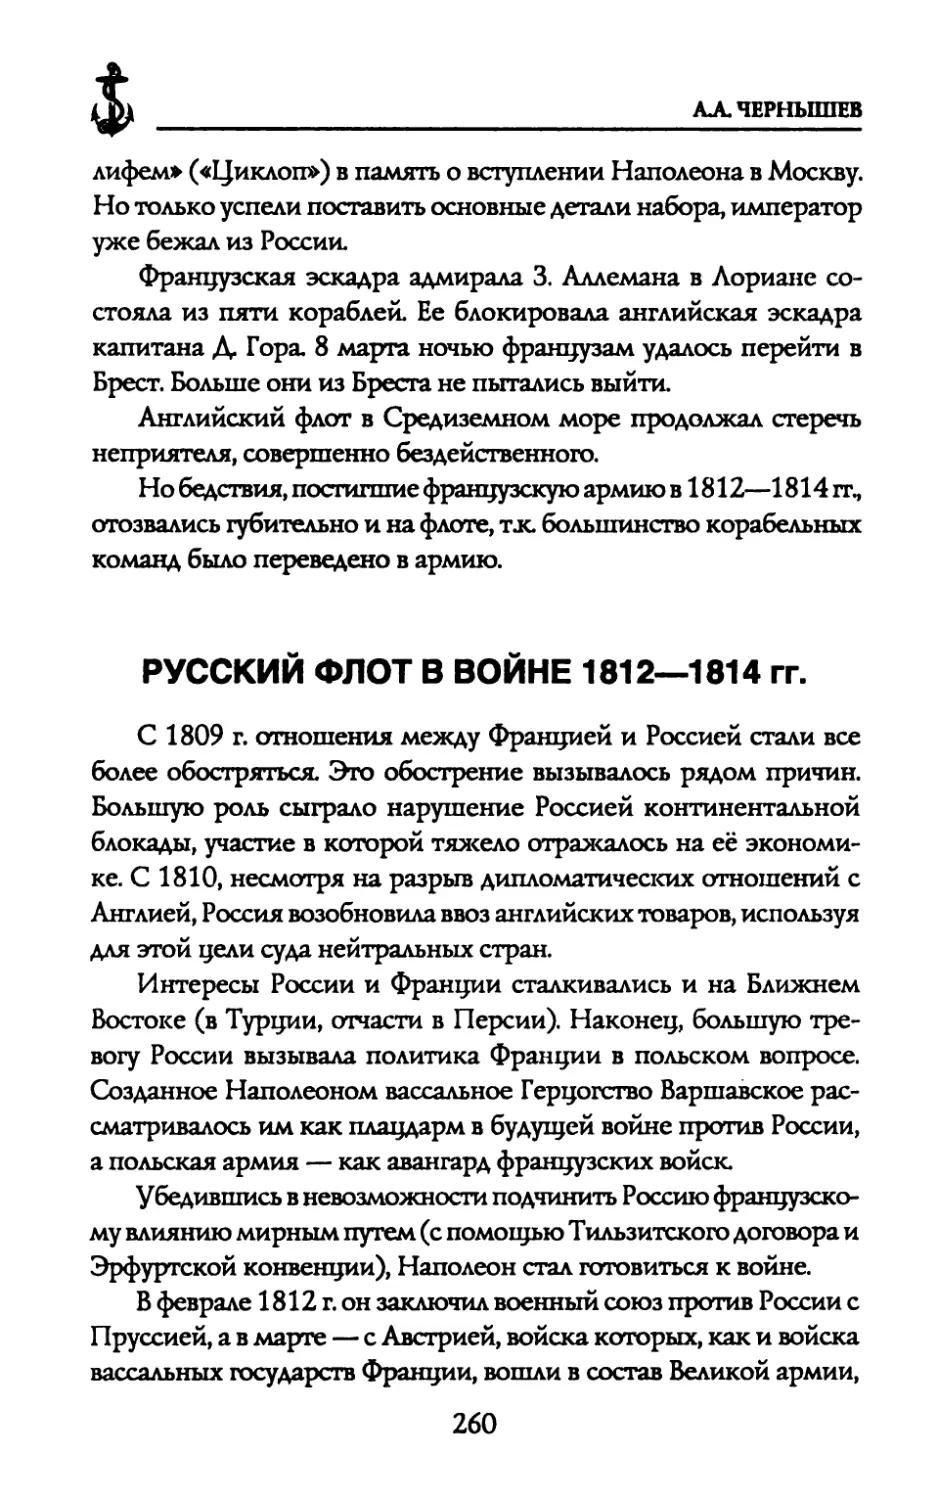 РУССКИЙ ФЛОТ В ВОЙНЕ 1812—1814 гг.